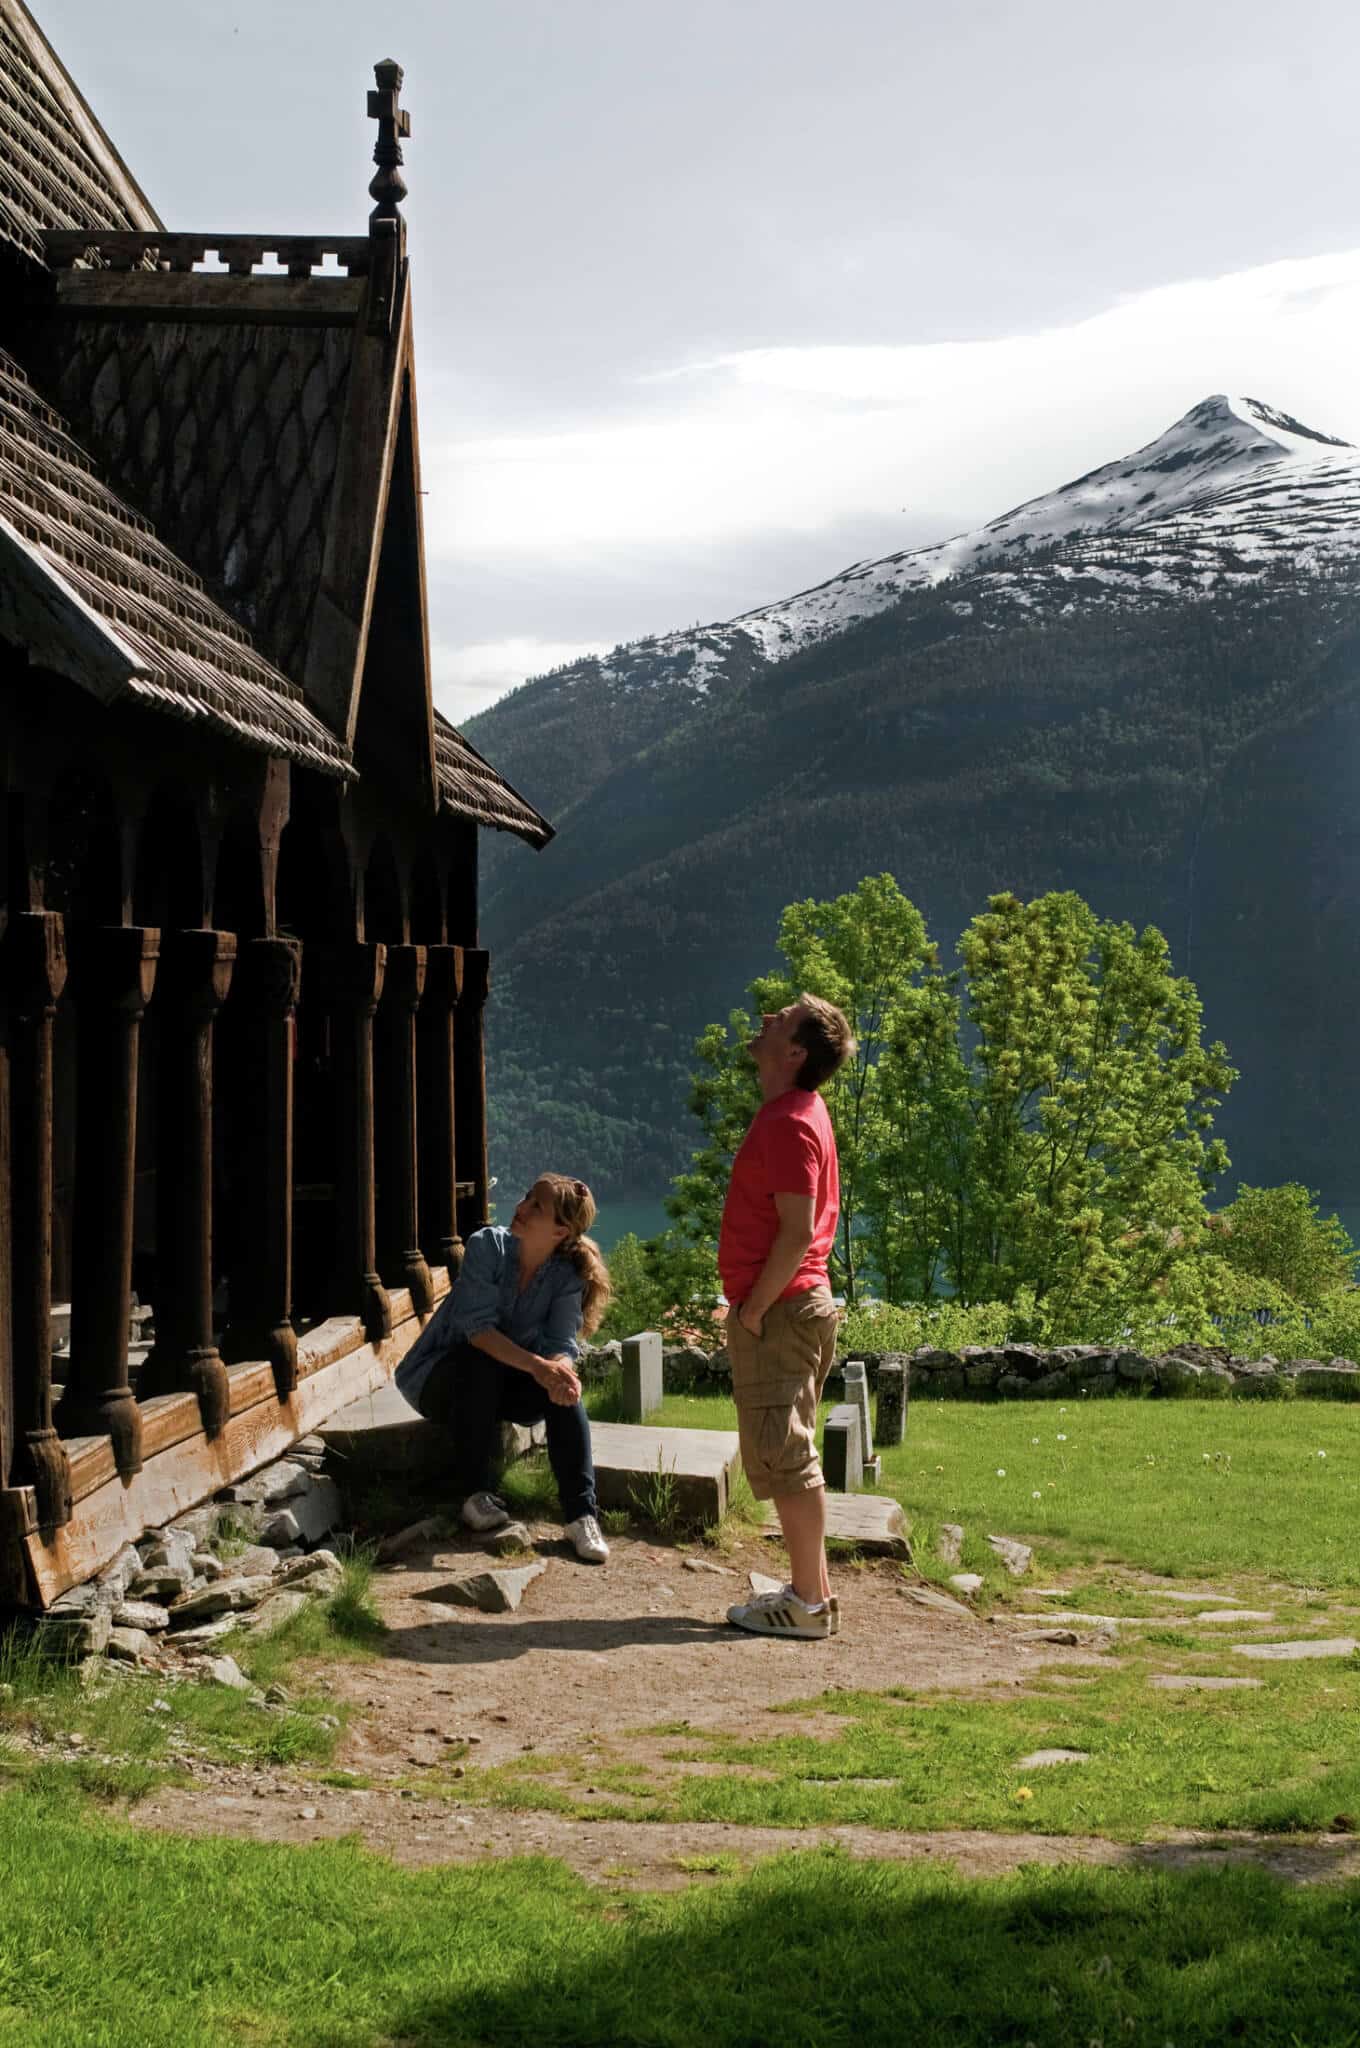 Urnesi torni kirik-üks paljudest Norra kirikutest